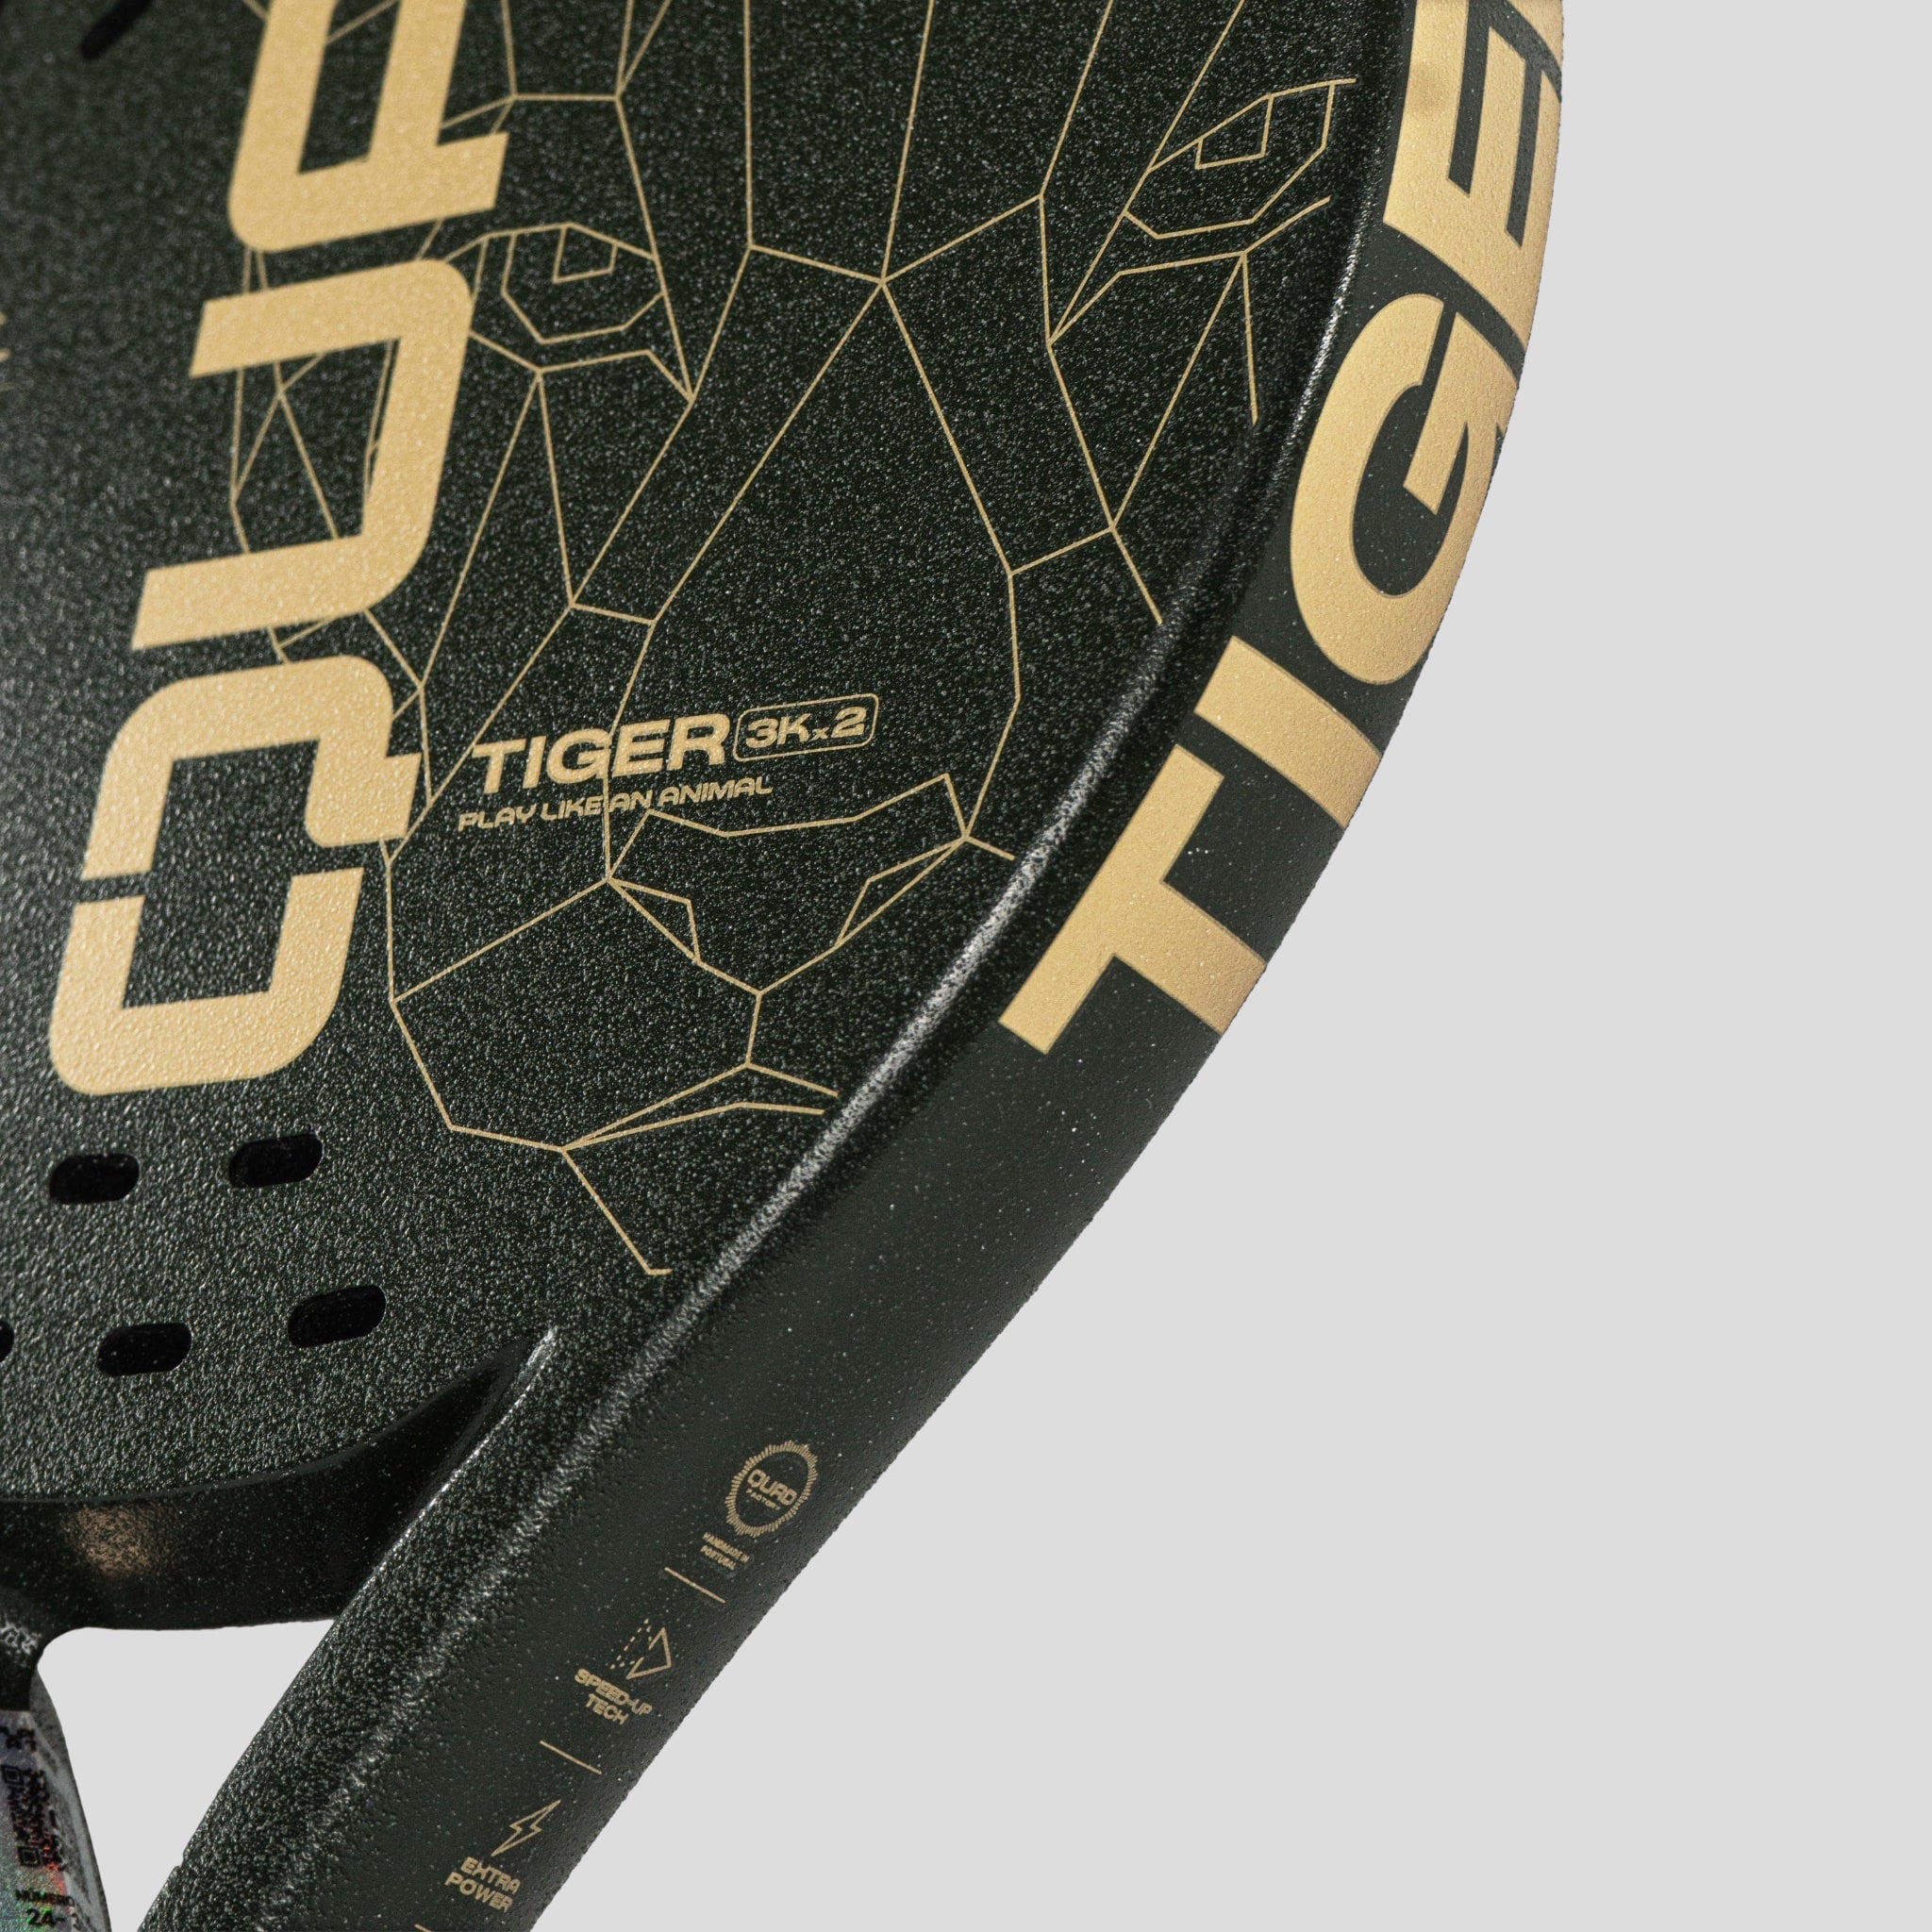 QUAD Tiger Padel Racket side detail